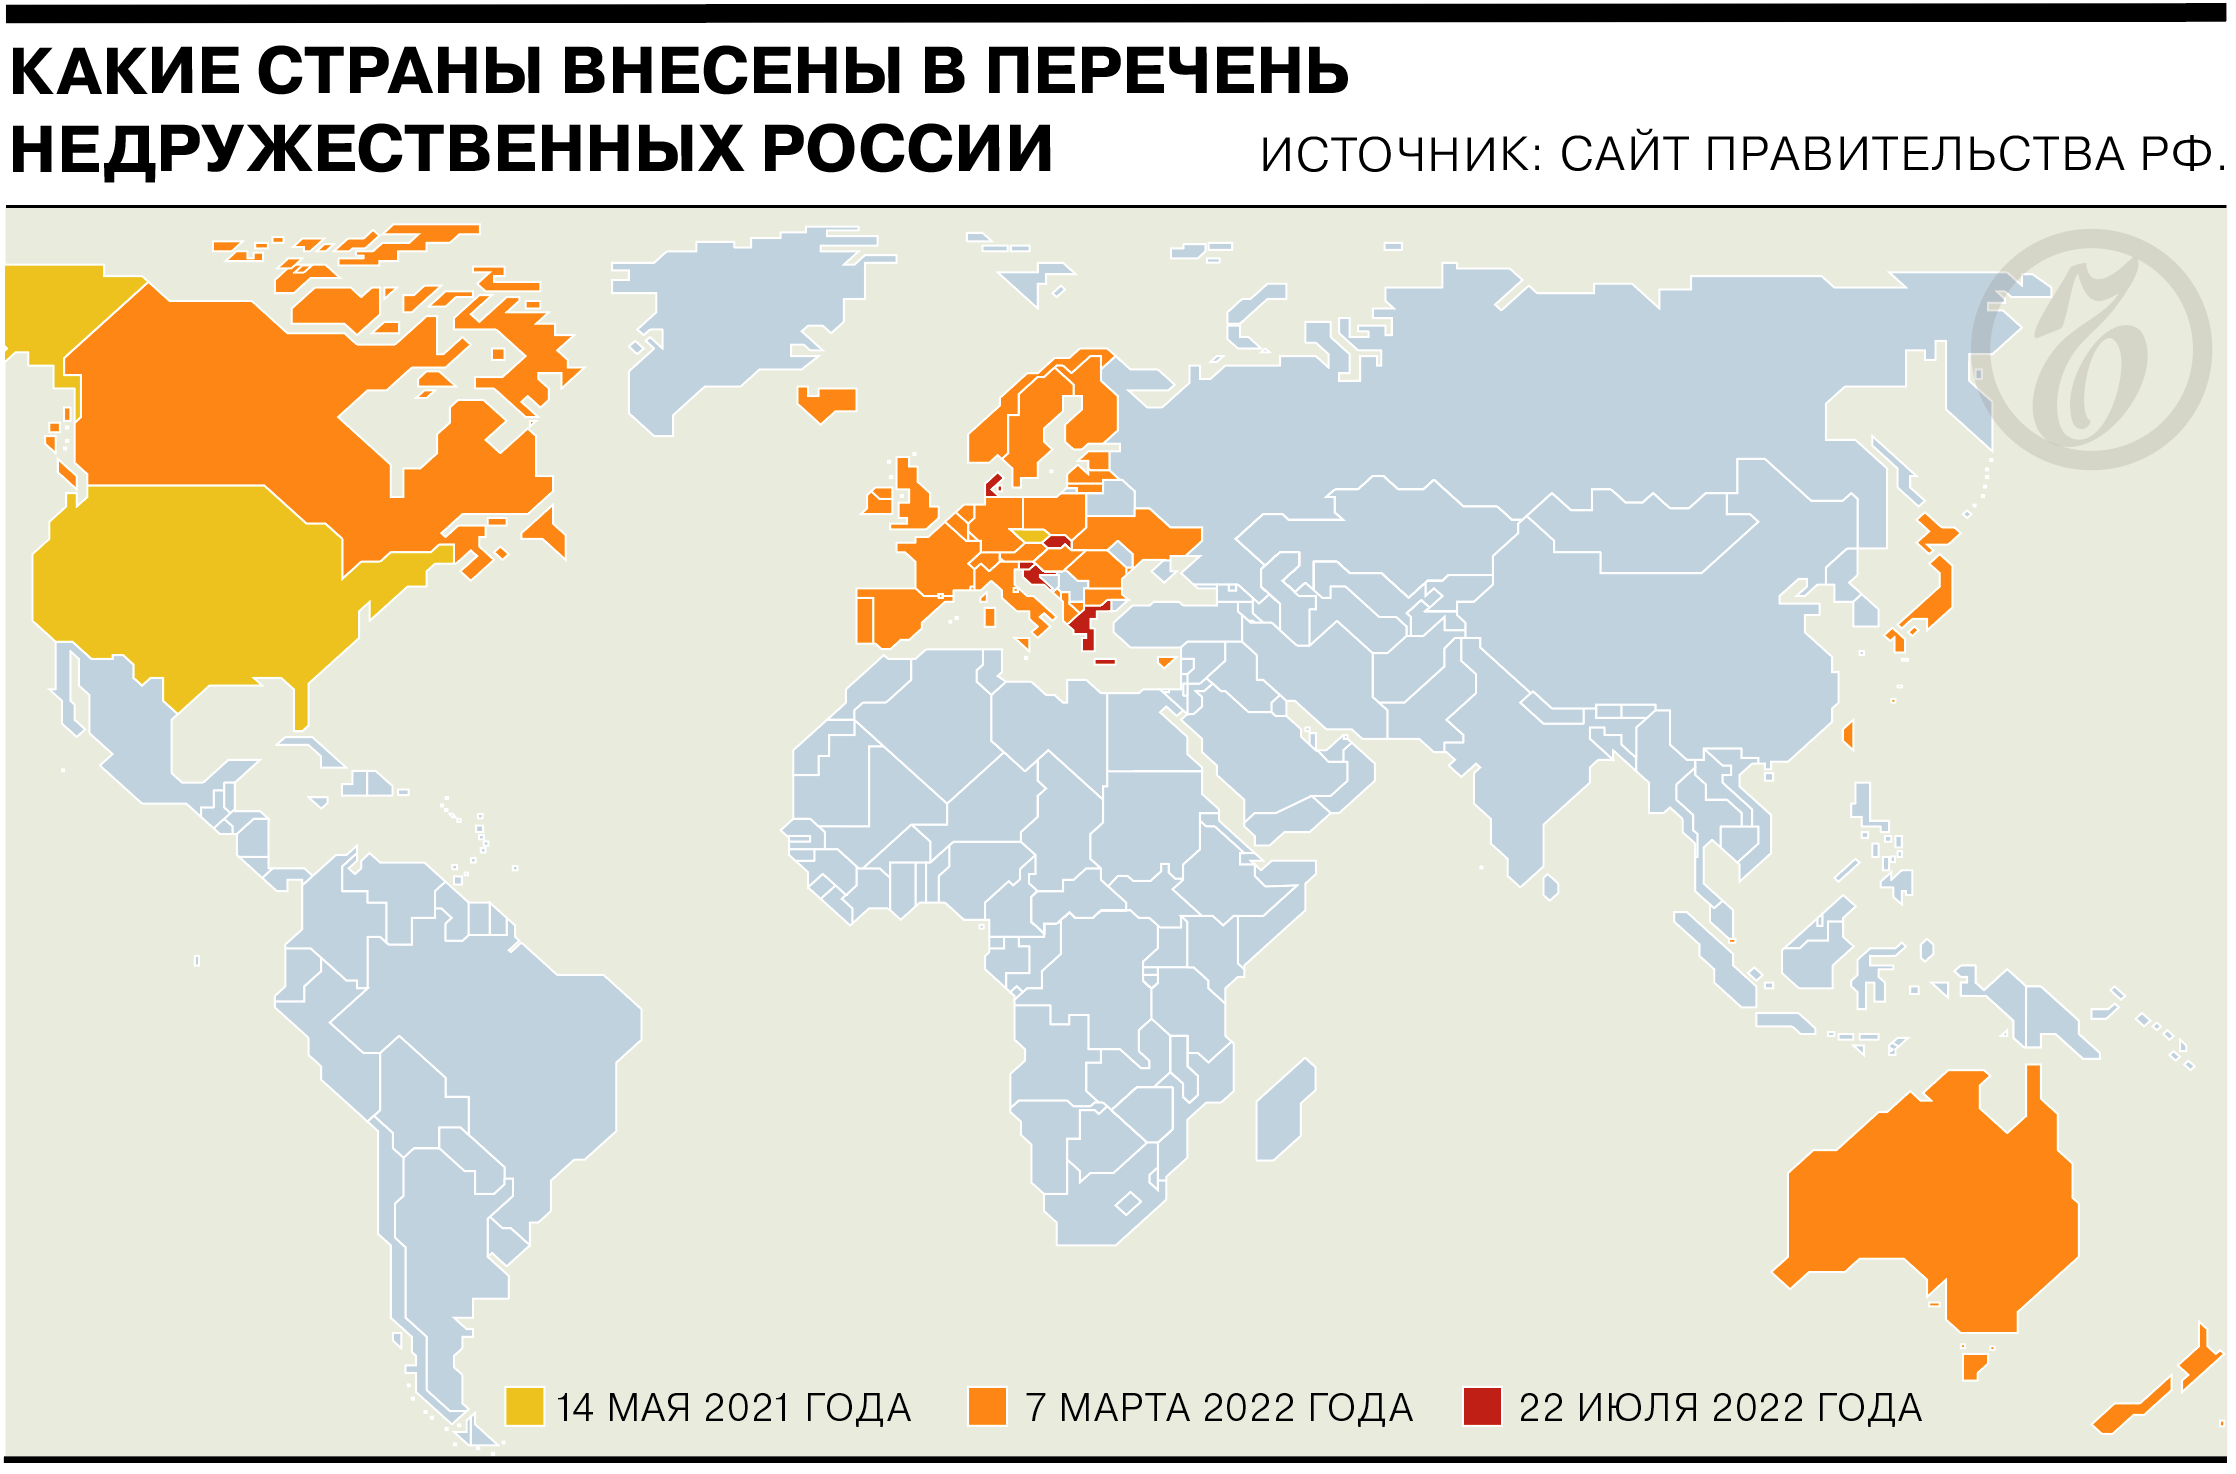 Как расширялся список недружественных России стран - Коммерсантъ